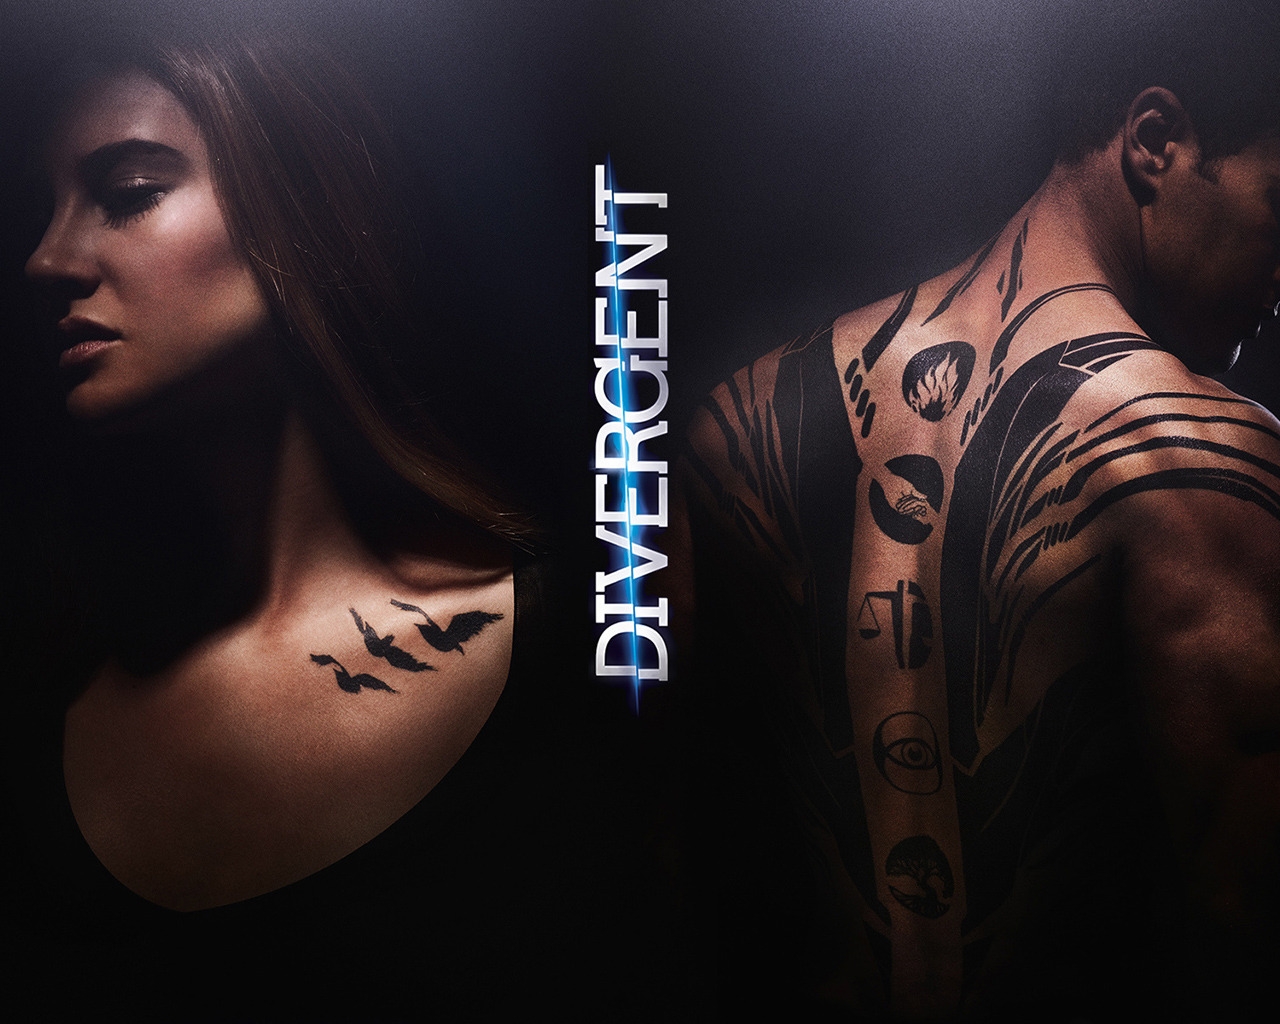 Divergent Movie for 1280 x 1024 resolution